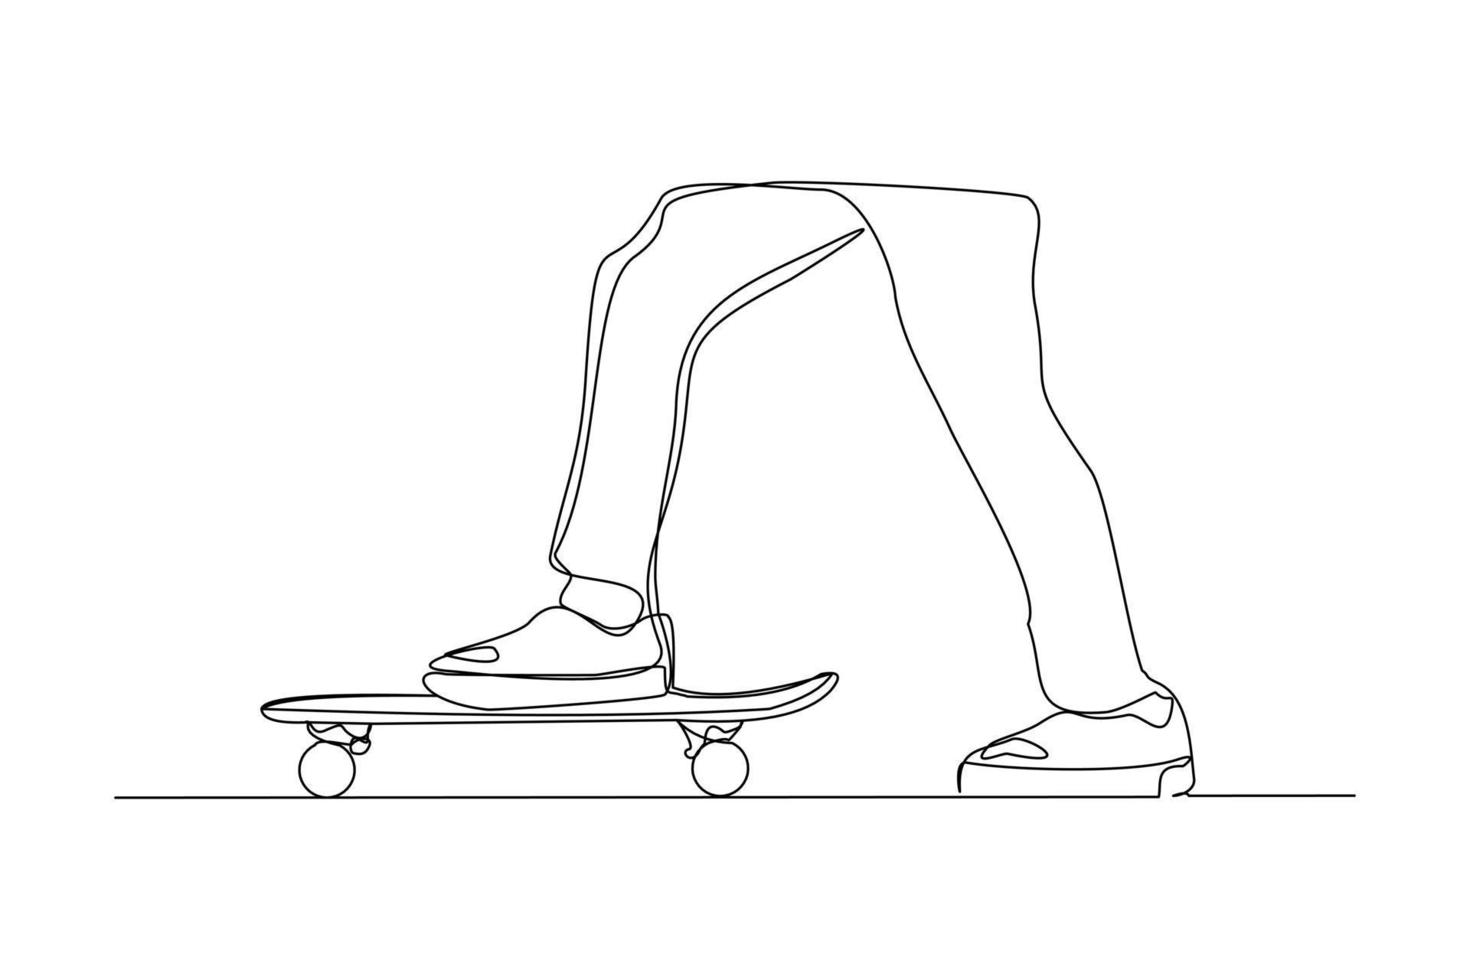 dessin en ligne continu d'un jeune homme jouant au skateboard. thème d'illustration vectorielle de sport d'art d'une seule ligne. personne jouer à un jeu pour l'exercice et passe-temps isolé sur fond blanc vecteur